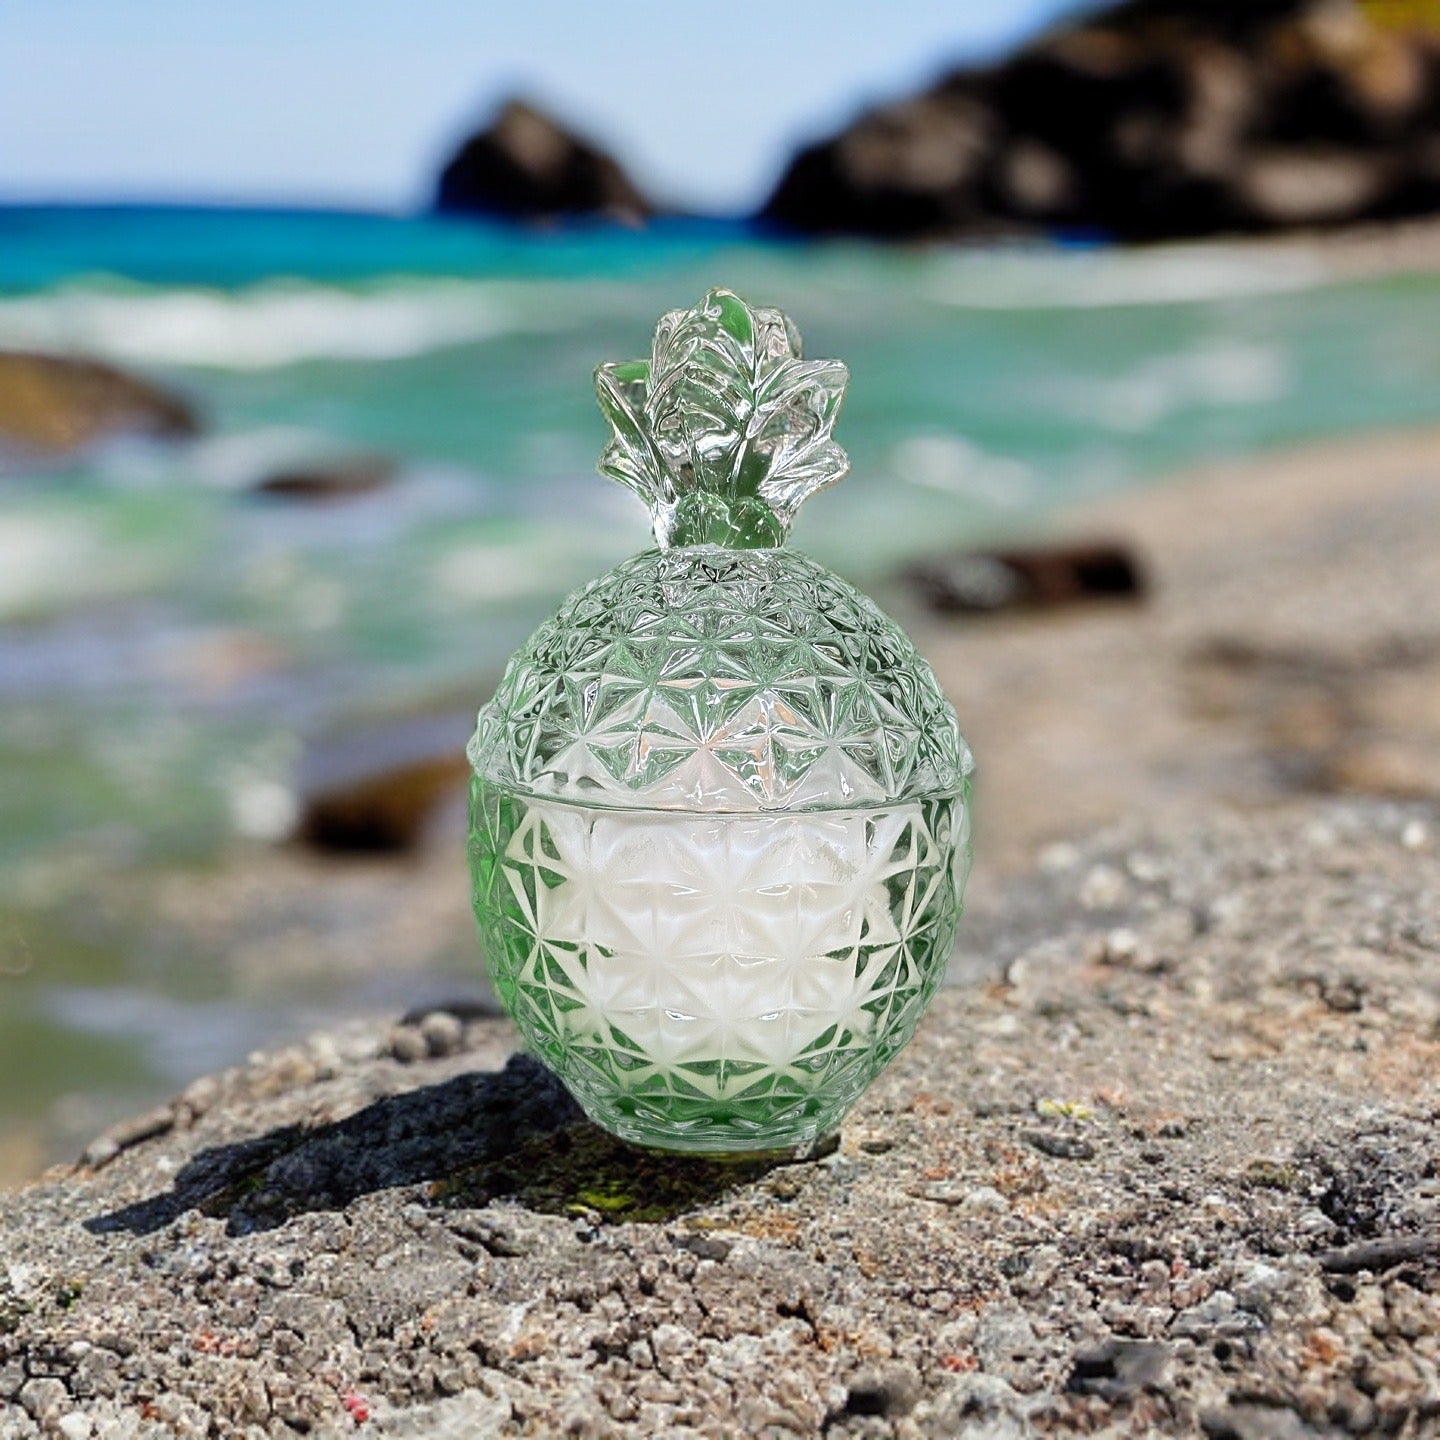 Coastal - A Beach Perfume